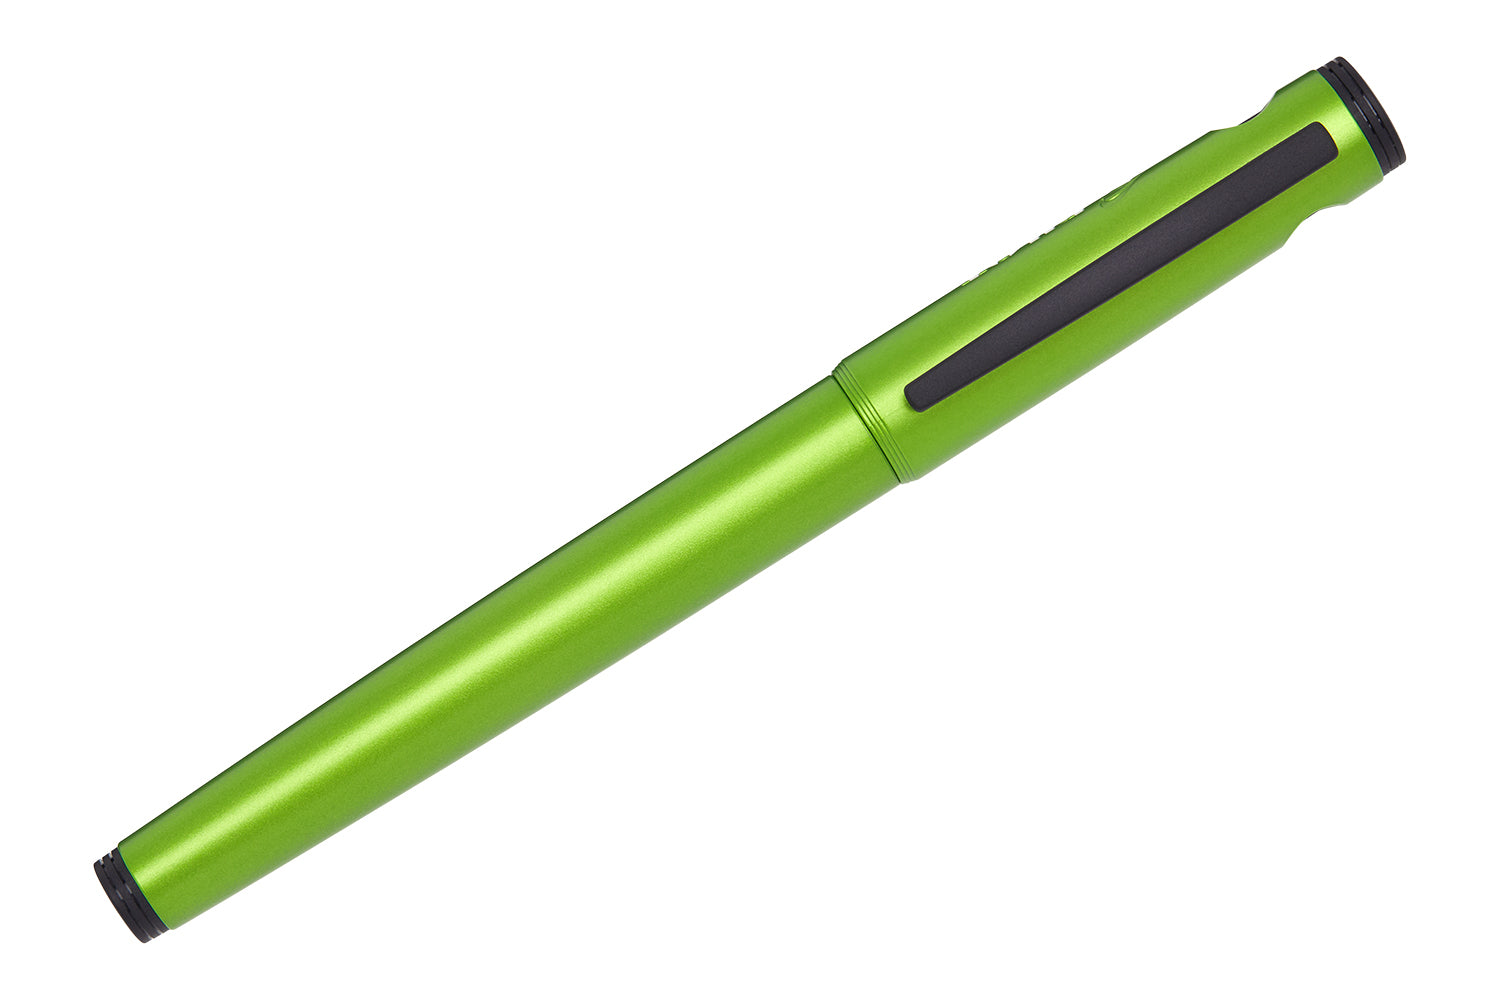 Gourmet Pens: Review: Pilot VPen (Varsity) Fountain Pen - Light Green  @PilotPenUSA @JetPens